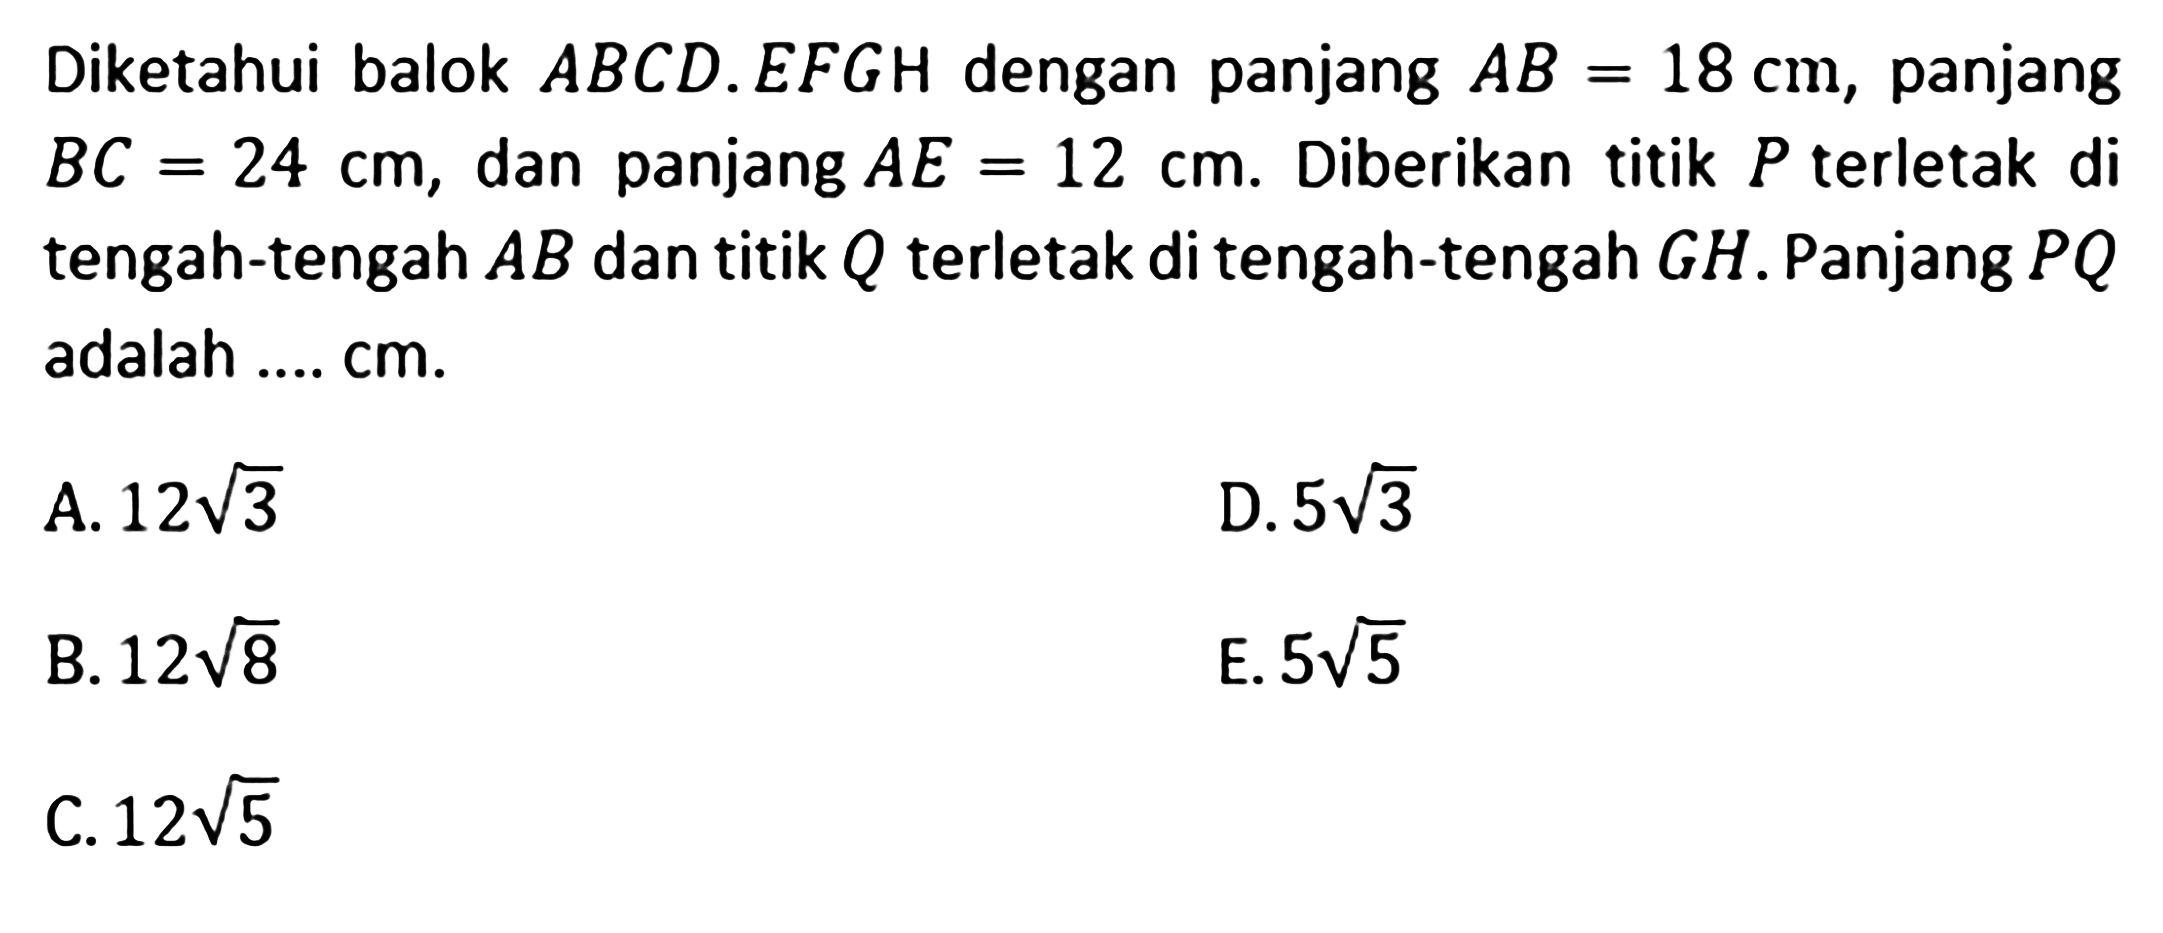 Diketahui balok ABCD.EFGH dengan panjang AB=18 cm, panjang BC=24 cm, dan panjang AE=12 cm. Diberikan titik P terletak di tengah-tengah AB dan titik Q terletak di tengah-tengah GH. Panjang PQ adalah .... cm. A. 12 akar(3) D. 5 akar(3) B. 12 akar(8) E. 5 akar(5) C. 12 akar(5)